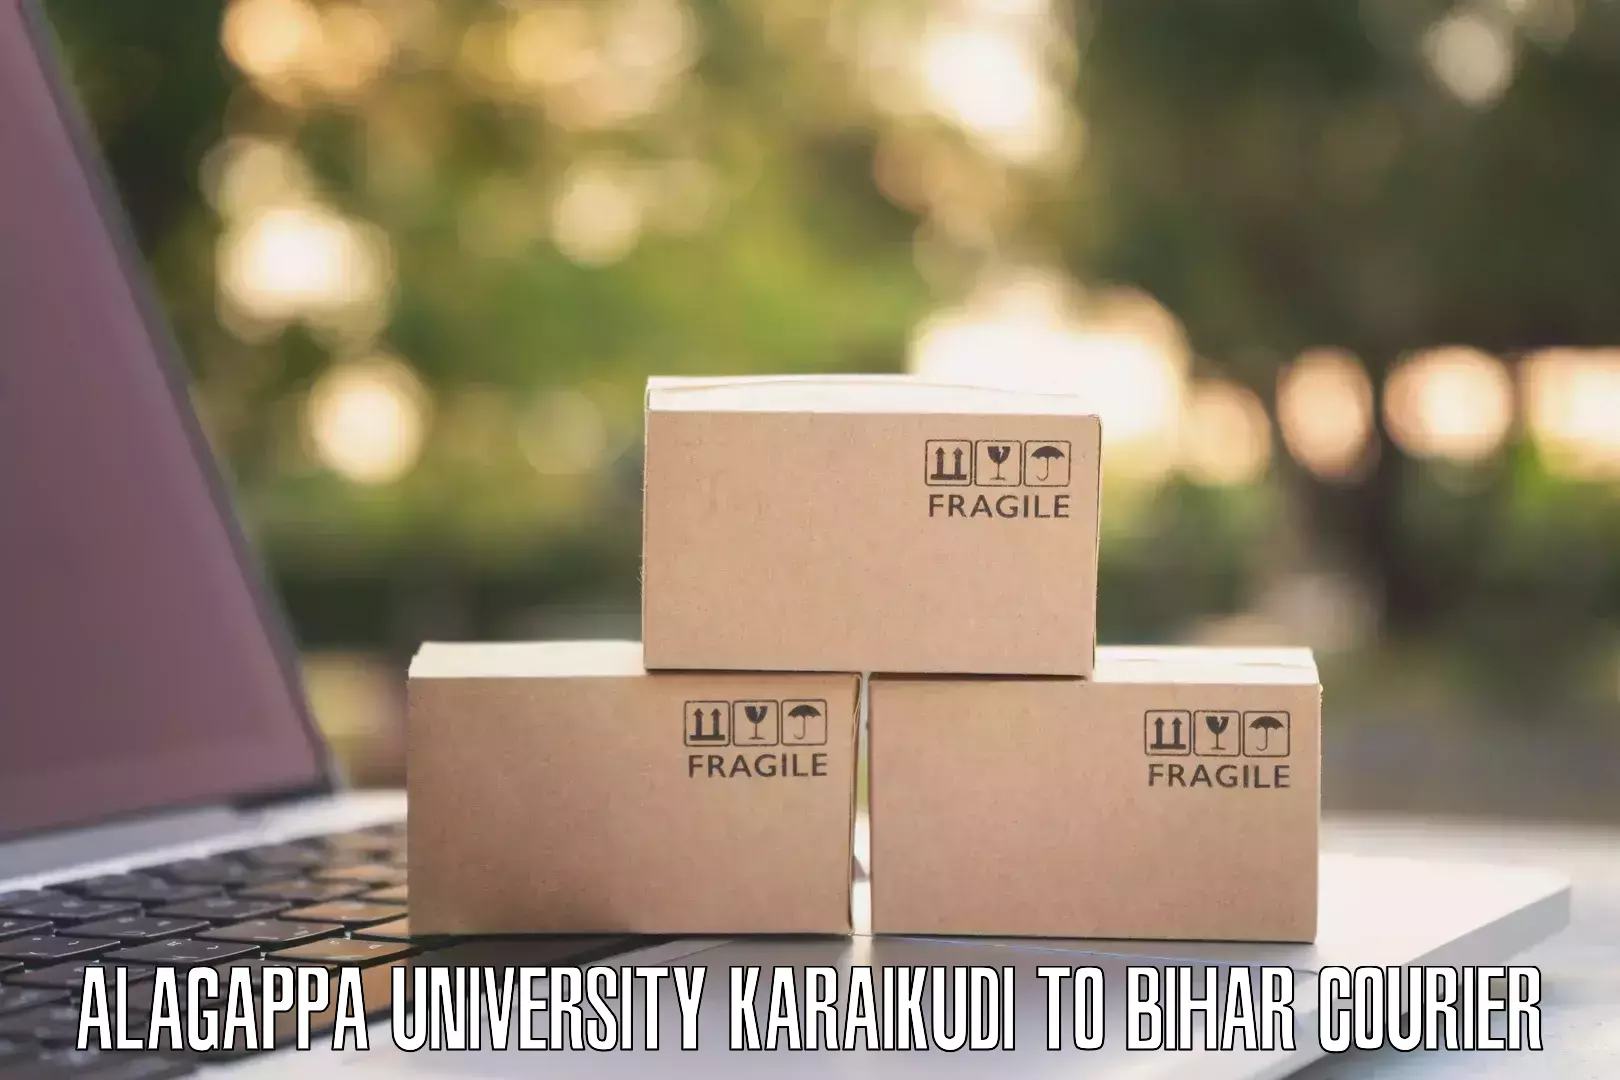 Digital courier platforms Alagappa University Karaikudi to Barauni